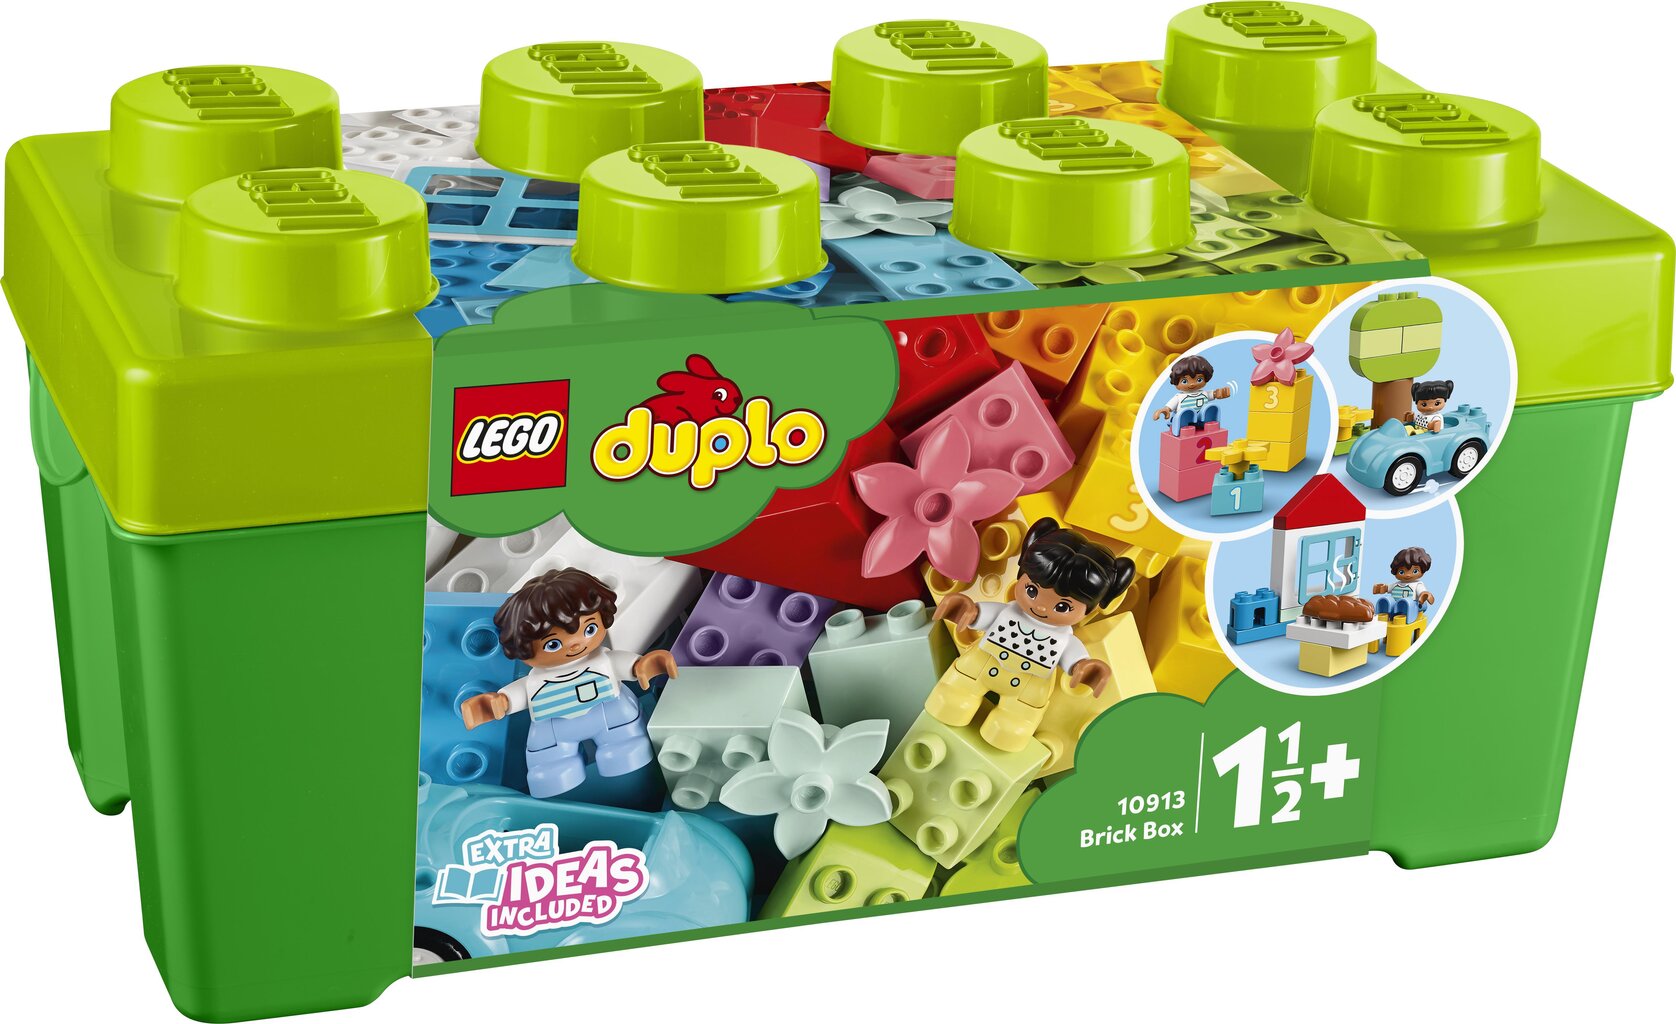 10913 LEGO® DUPLO Kaladėlių dėžė kaina | pigu.lt